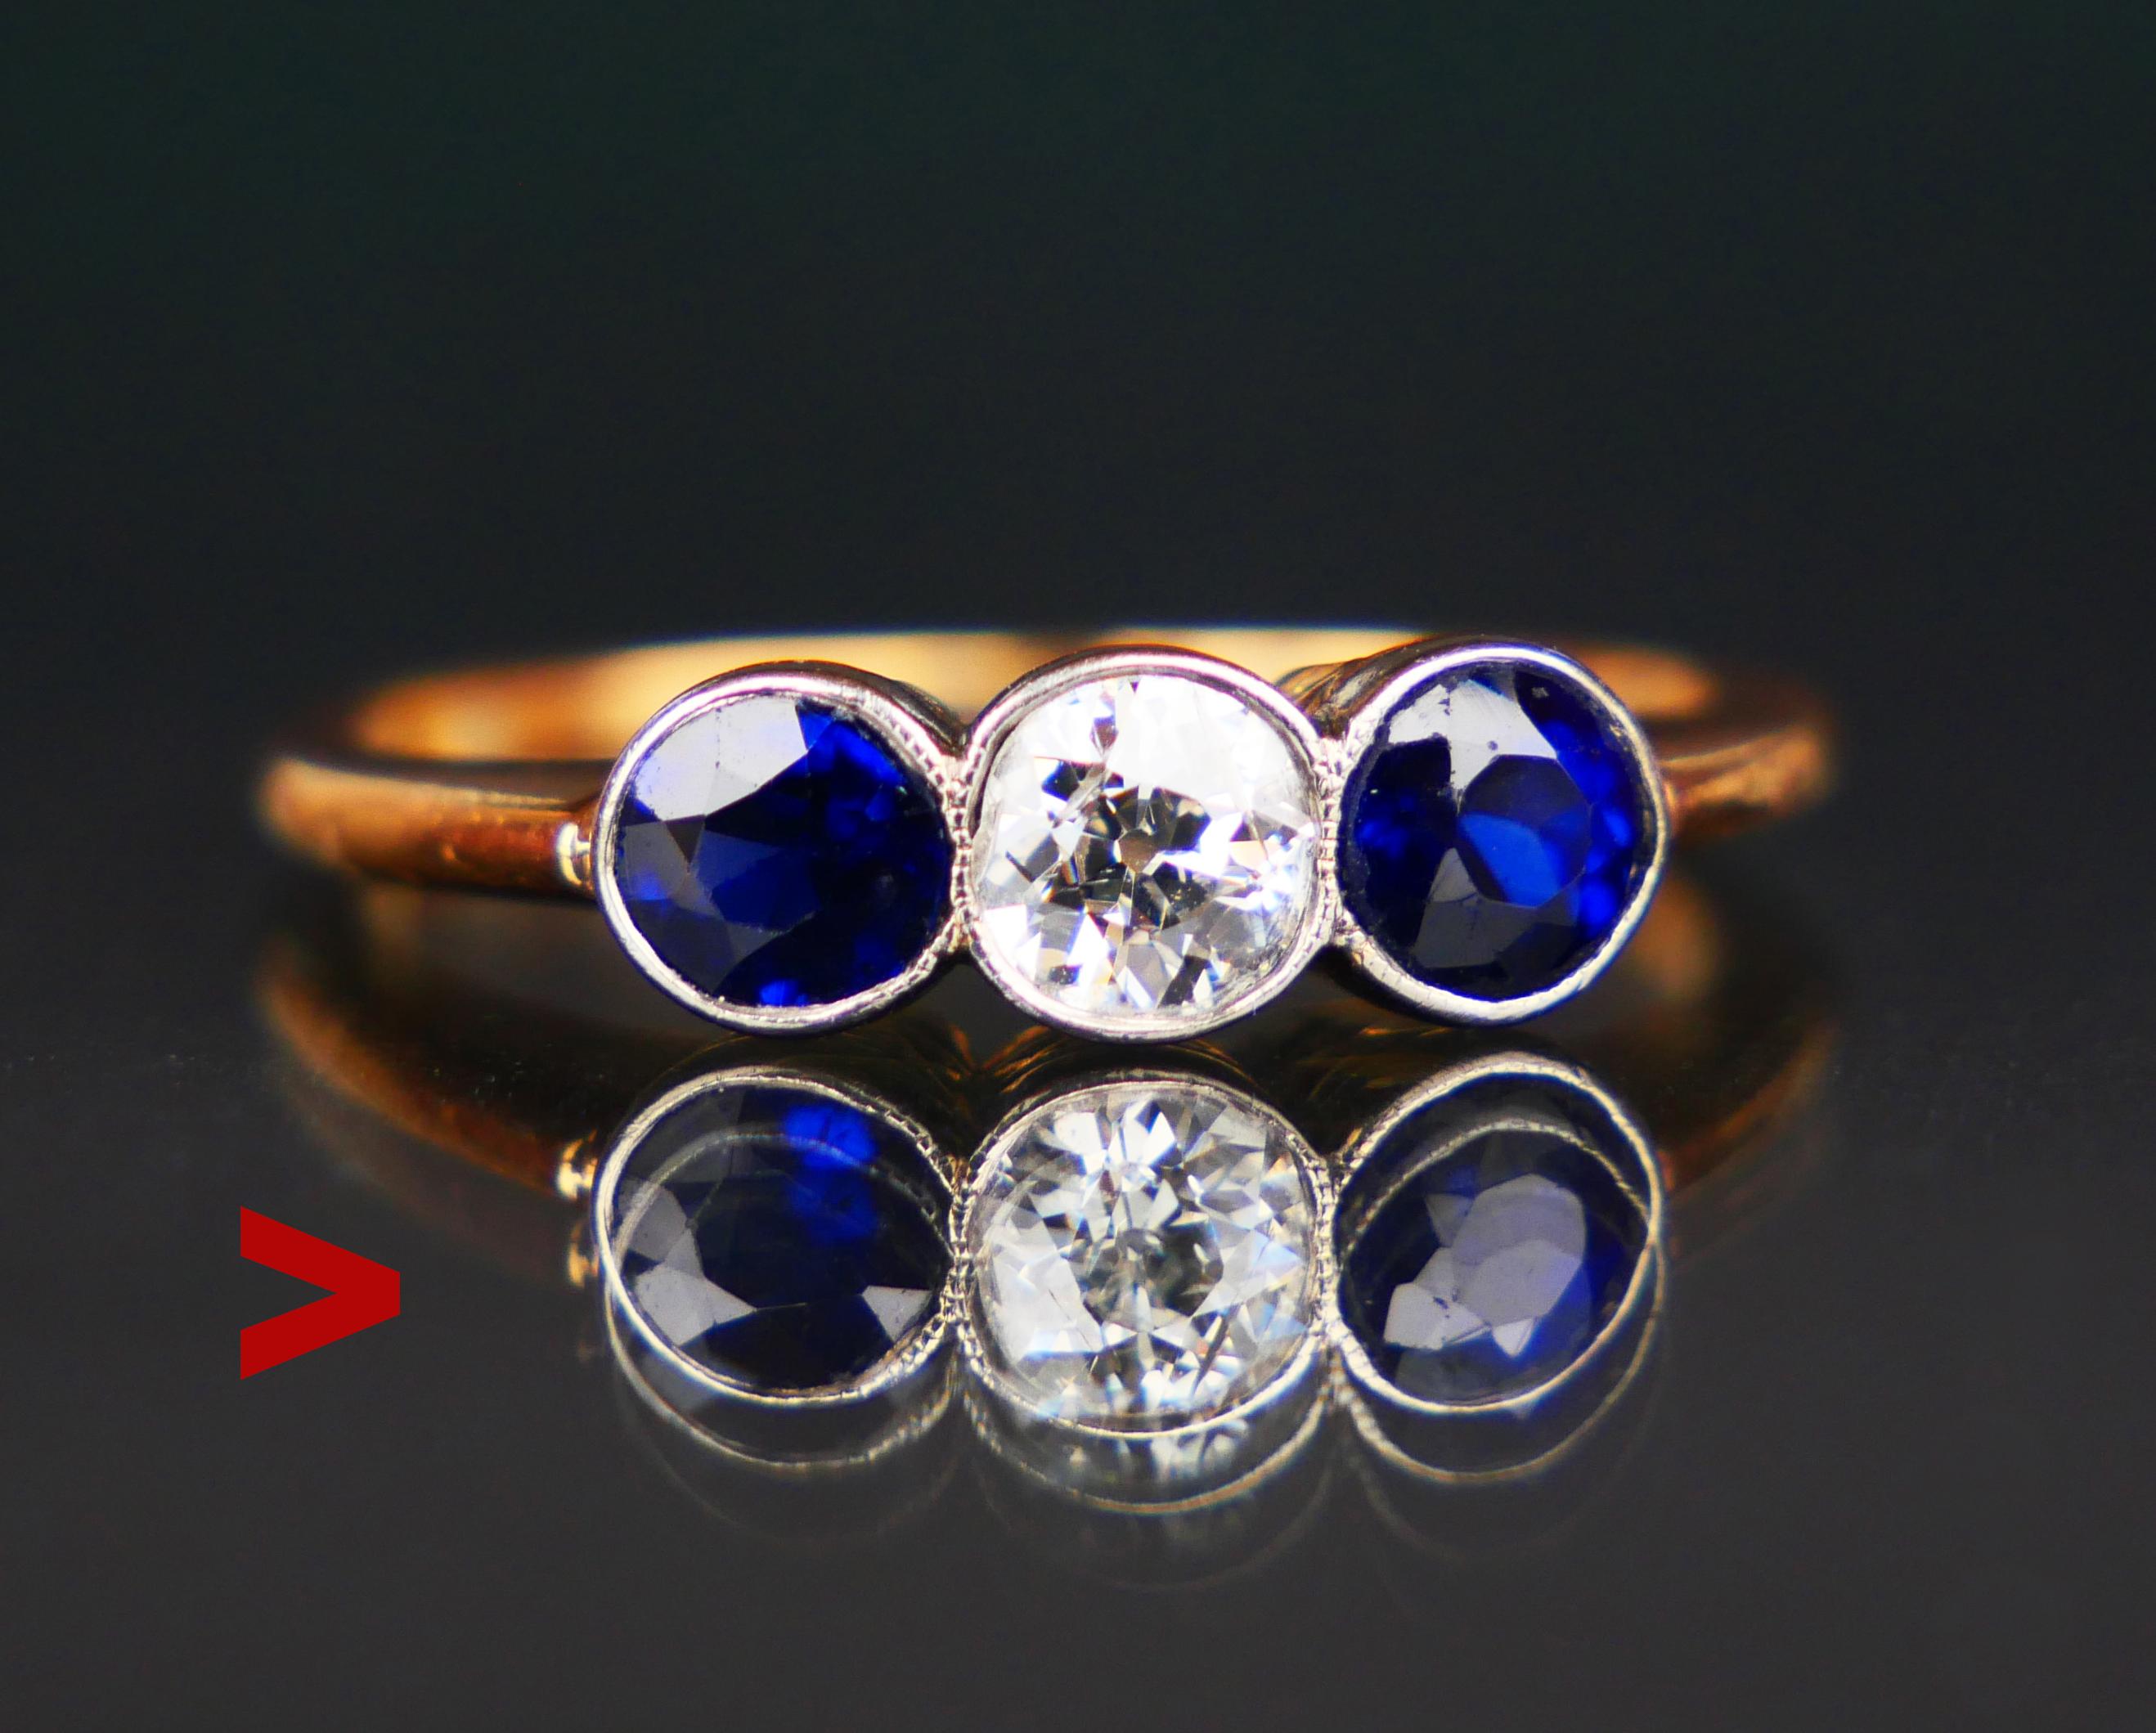 
Bague d'époque Art Nouveau à trois pierres, diamants et saphirs bleus, faite à la main en 1916. Ce modèle, doté d'une lunette sécurisée, est parfait pour une utilisation quotidienne/permanente.

Métal jaune en or massif 18 k. La couronne mesure :